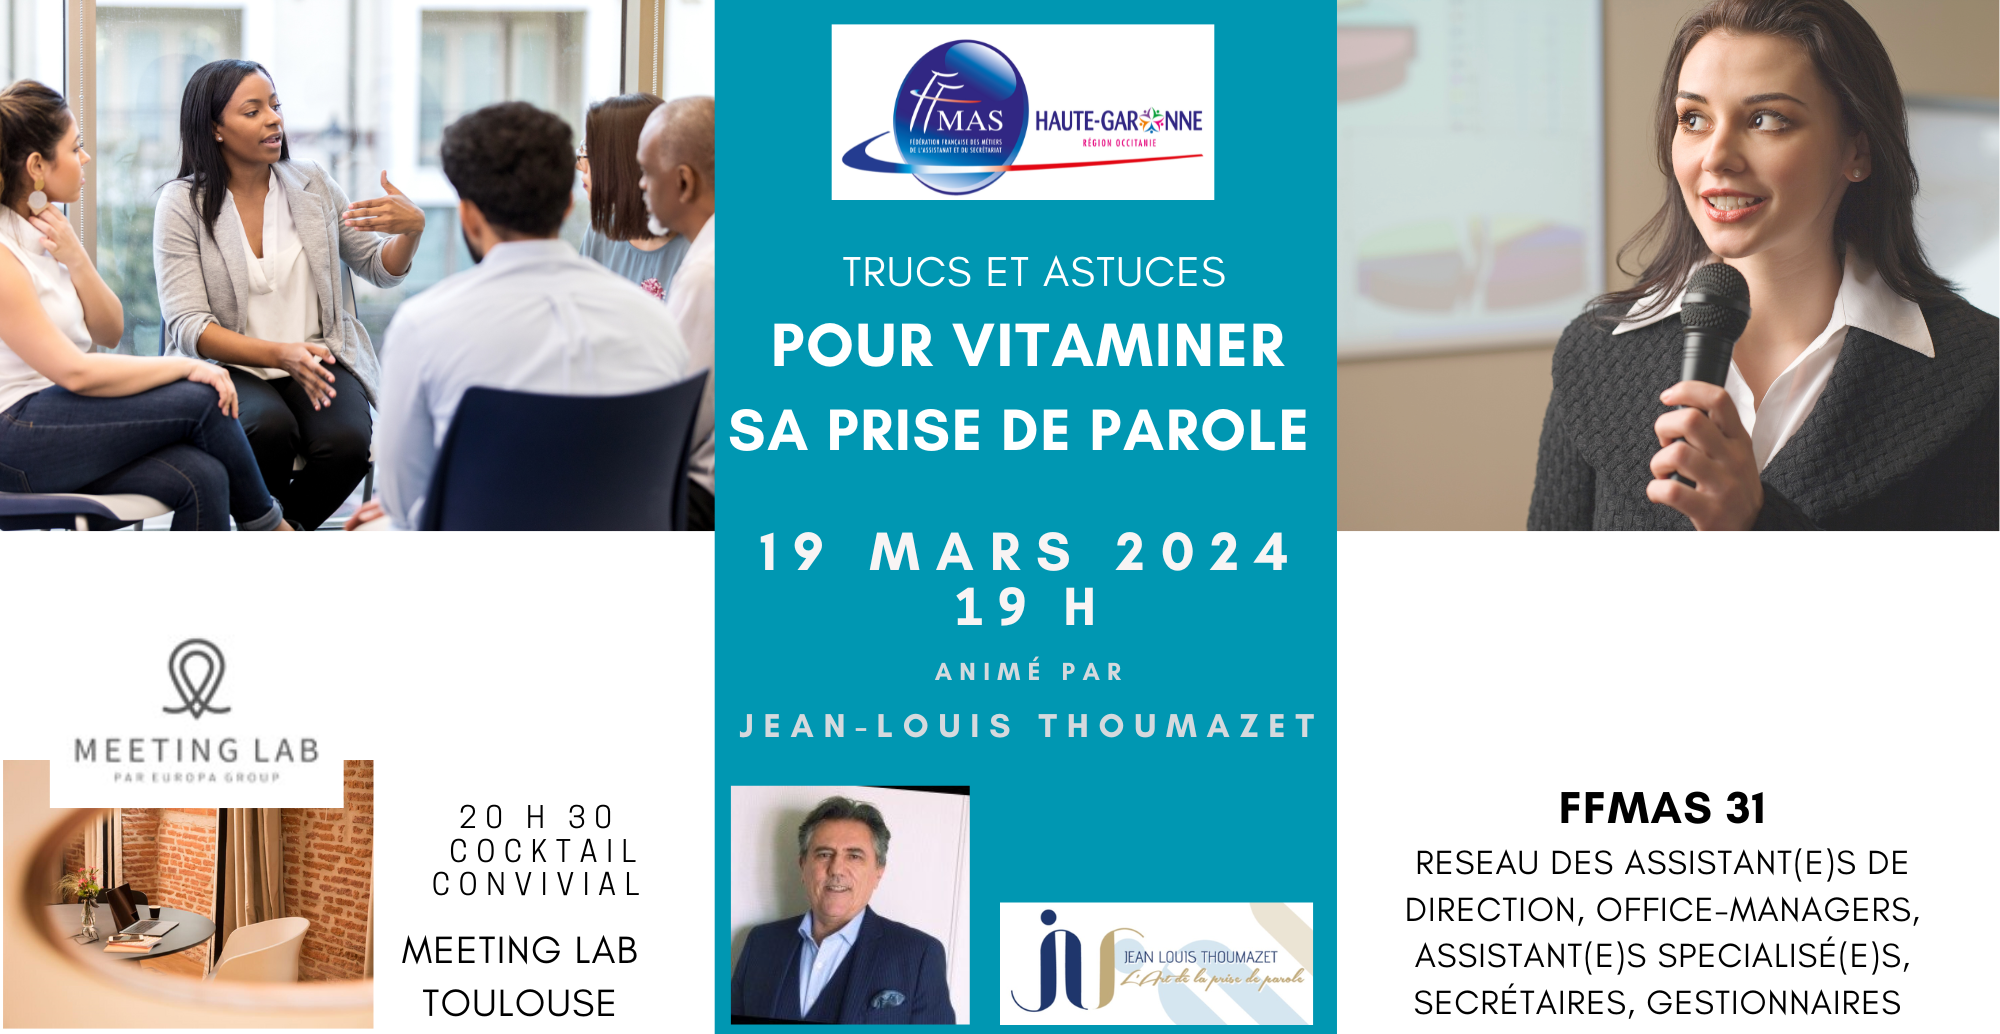 You are currently viewing Trucs et astuces pour VITAMINER SA PRISE DE PAROLE | Toulouse |19 mars 2024